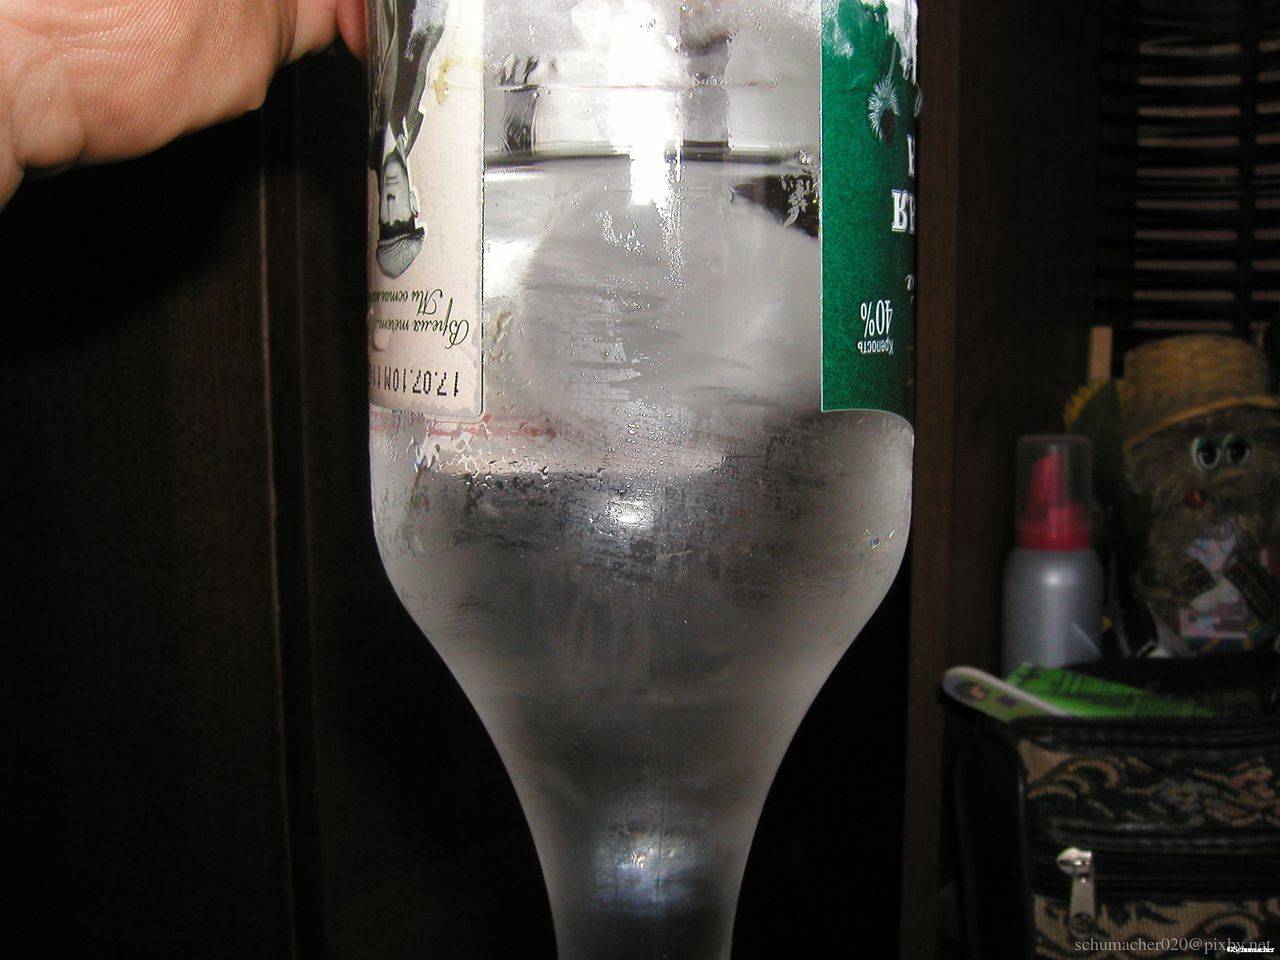 Температура замерзания водки: может ли замерзнуть в морозилке традиционный русский алкогольный напиток